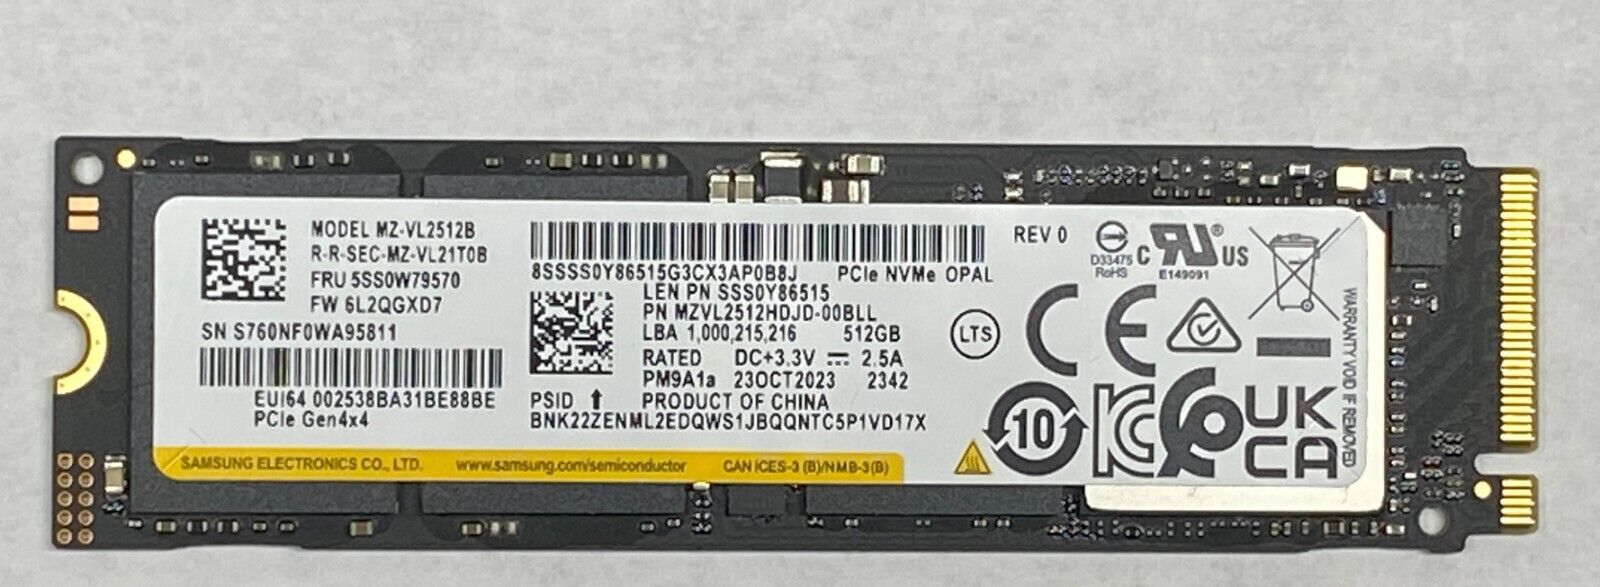 (OEM) SAMSUNG PM9A1a 512GB NVMe SSD M.2 2280 PCIe Gen4x4 MZVL2512HDJD-00BLL